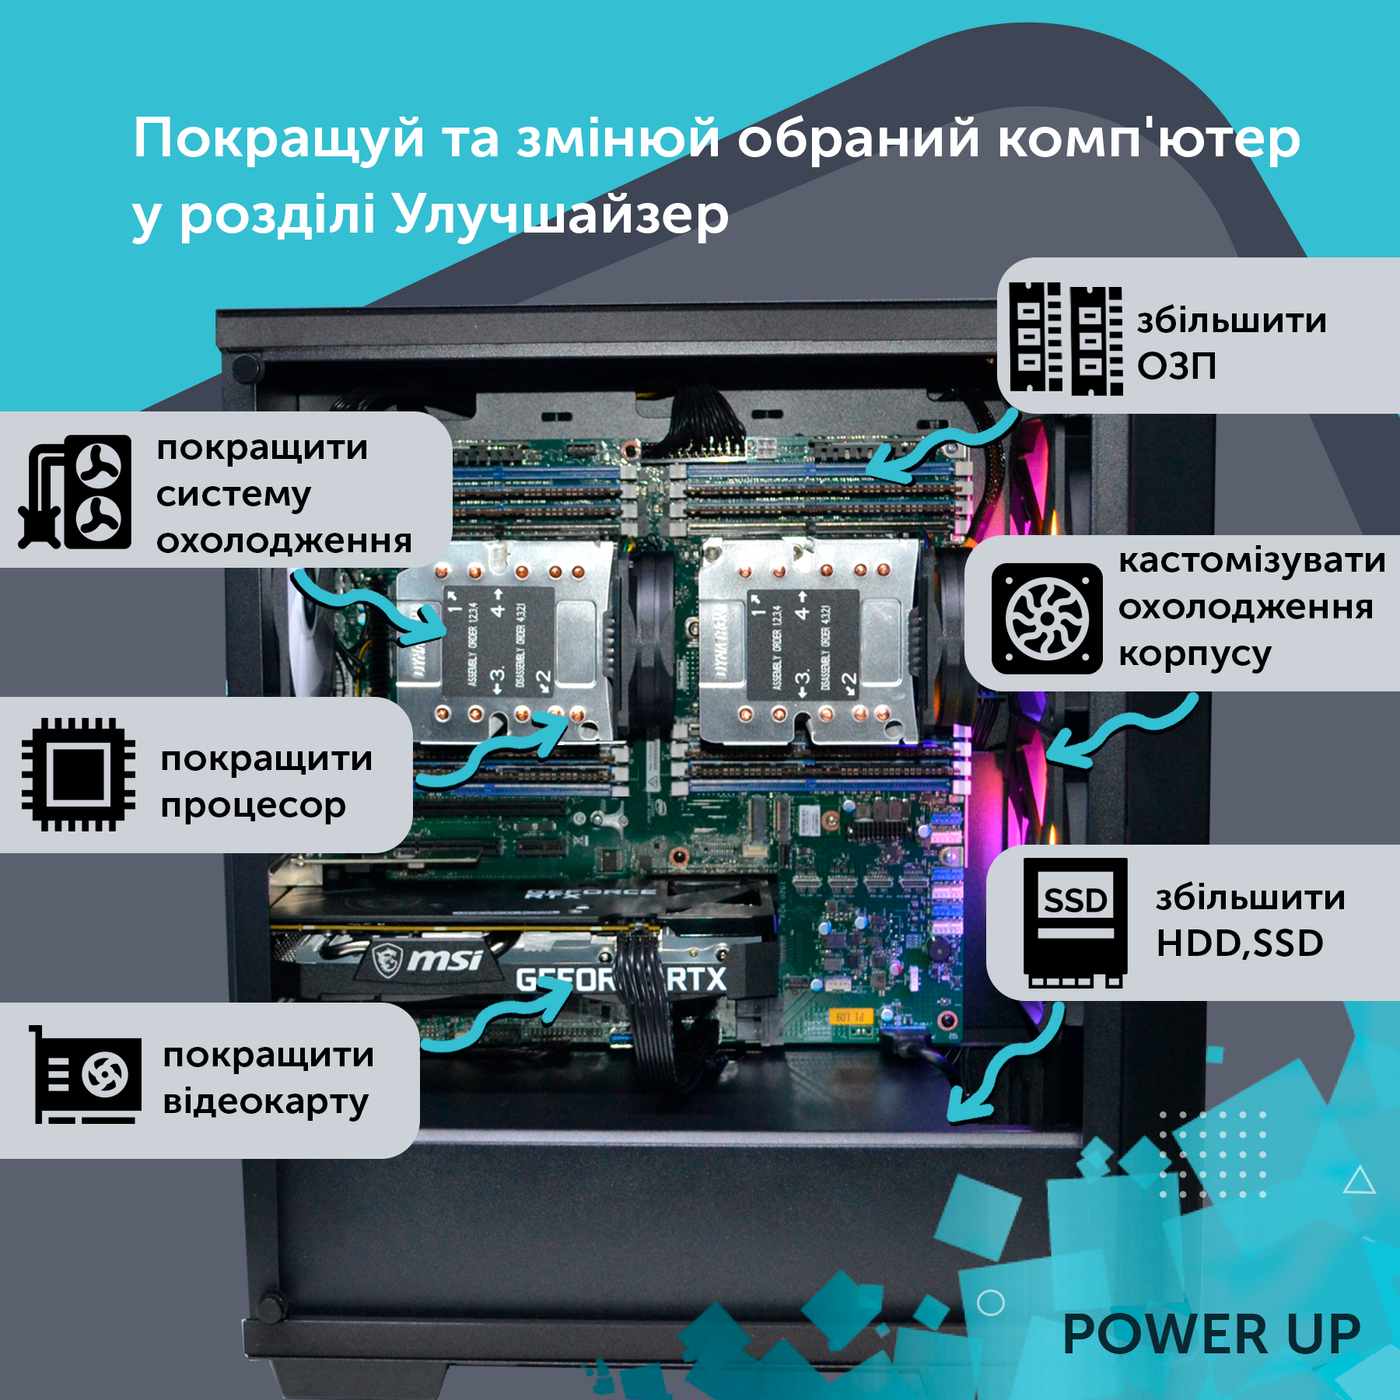 Робоча станція PowerUp #259 Xeon E5 2690 v3/16 GB/SSD 512GB/GeForce RTX 4060Ti 16GB